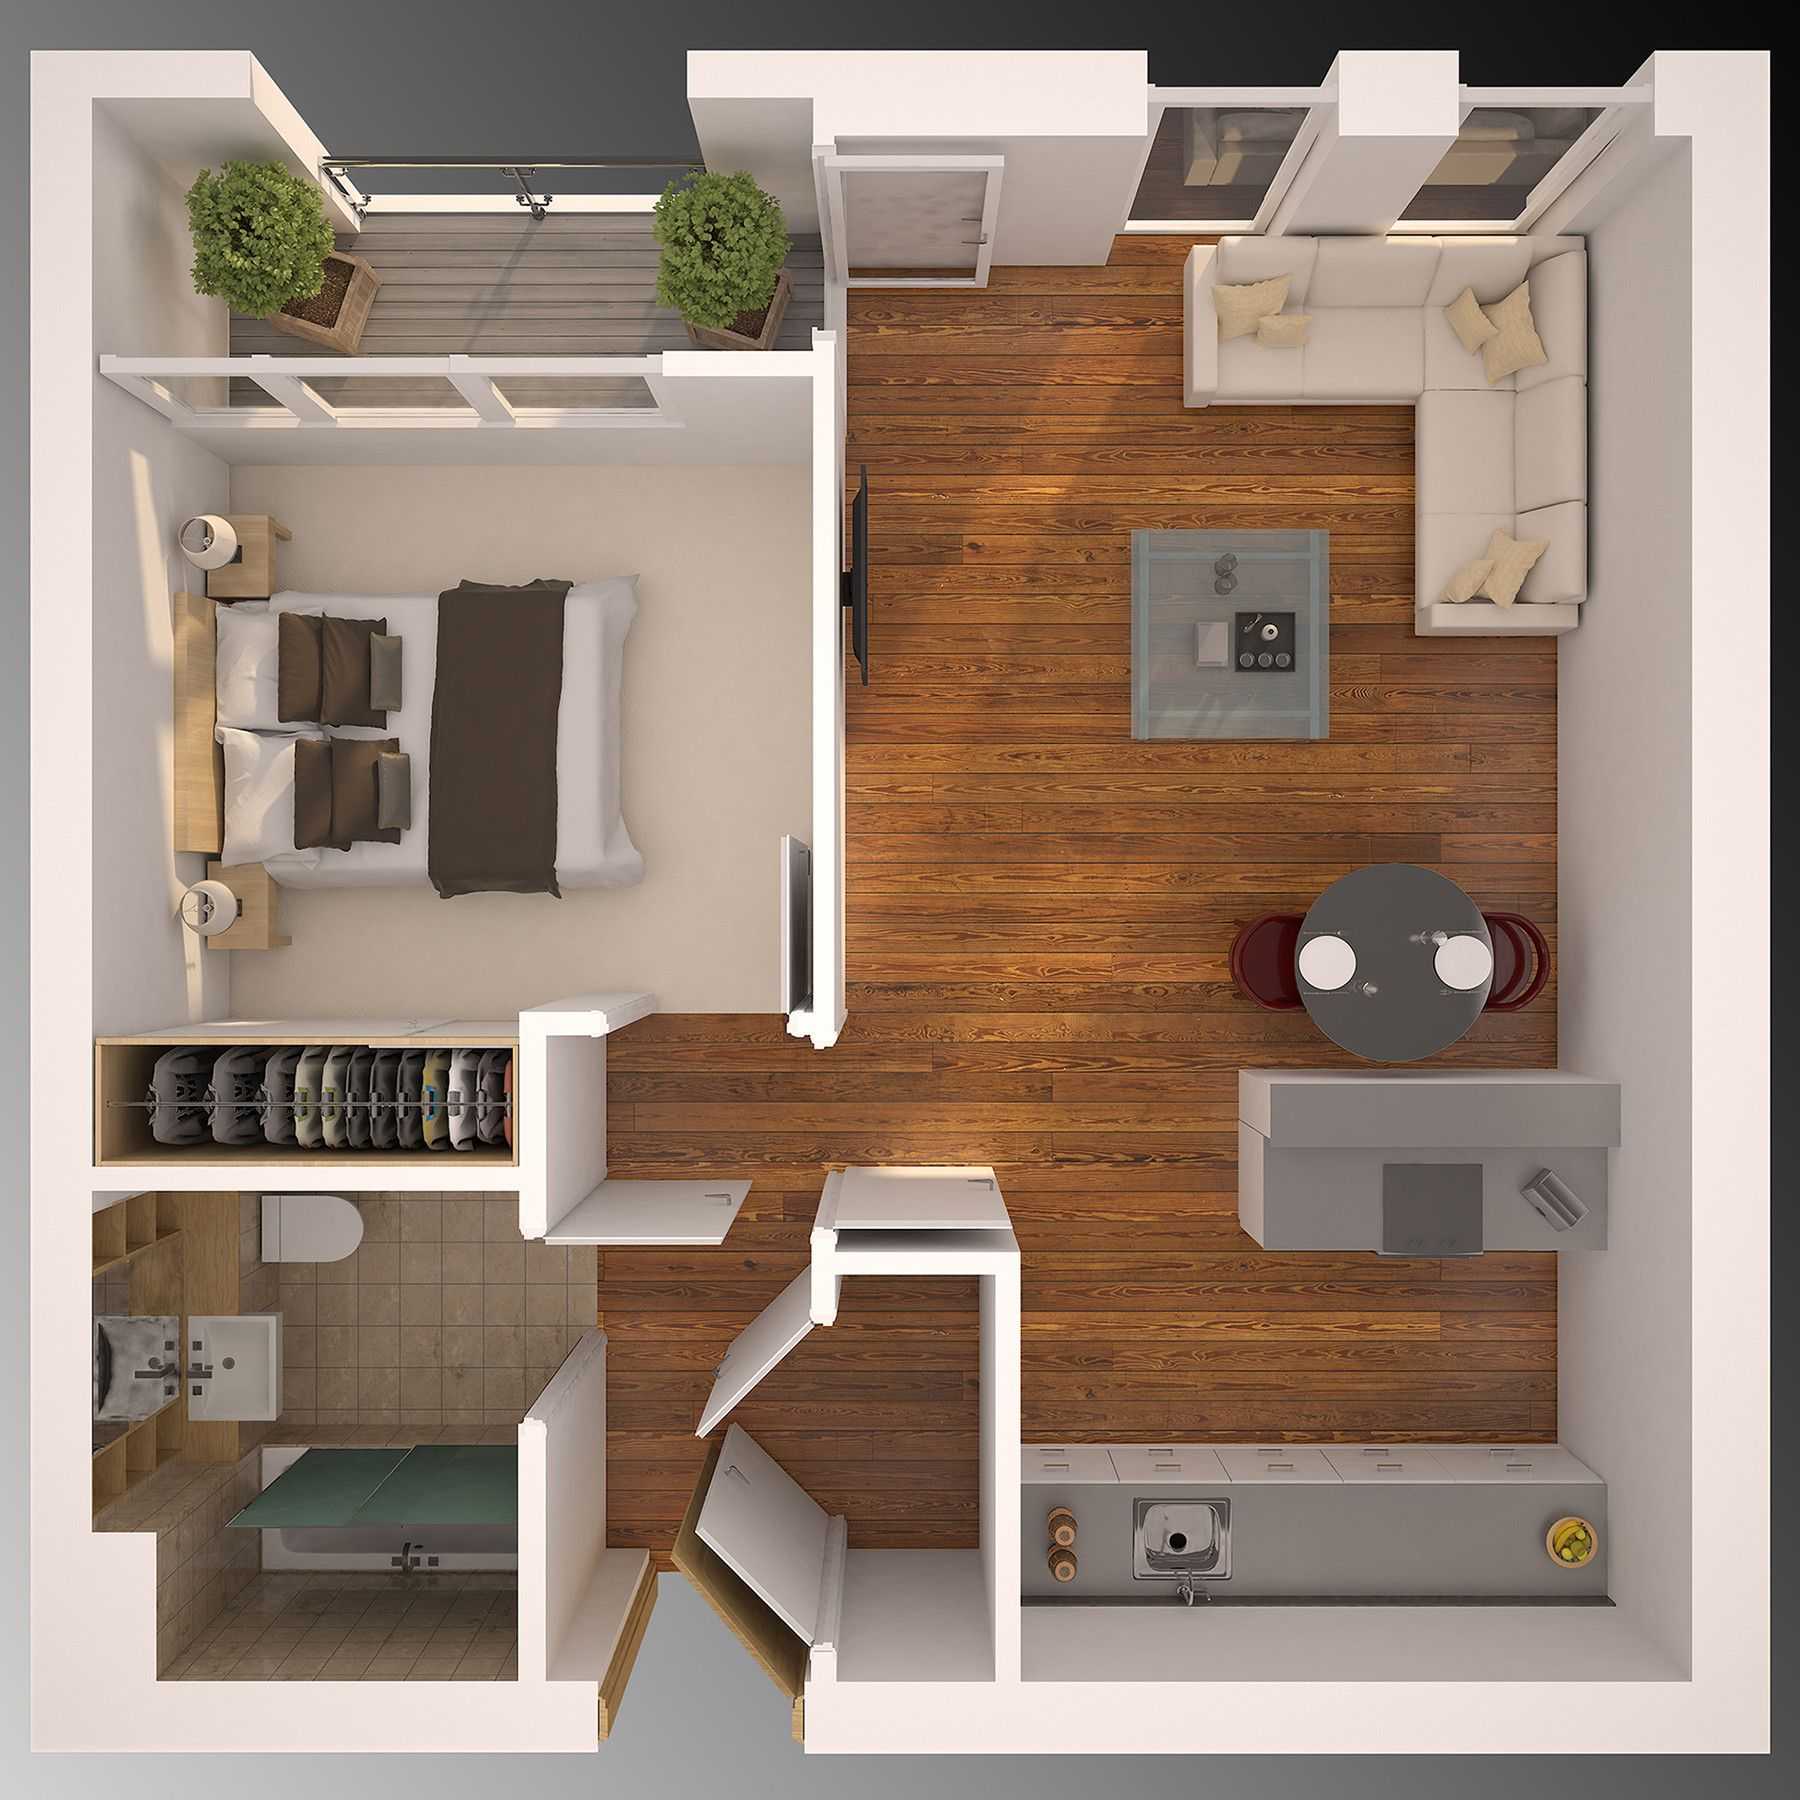 Схемы и фото планировок 3х комнатных квартир удачные решения – 2020 дизайн интерьера a-r-s